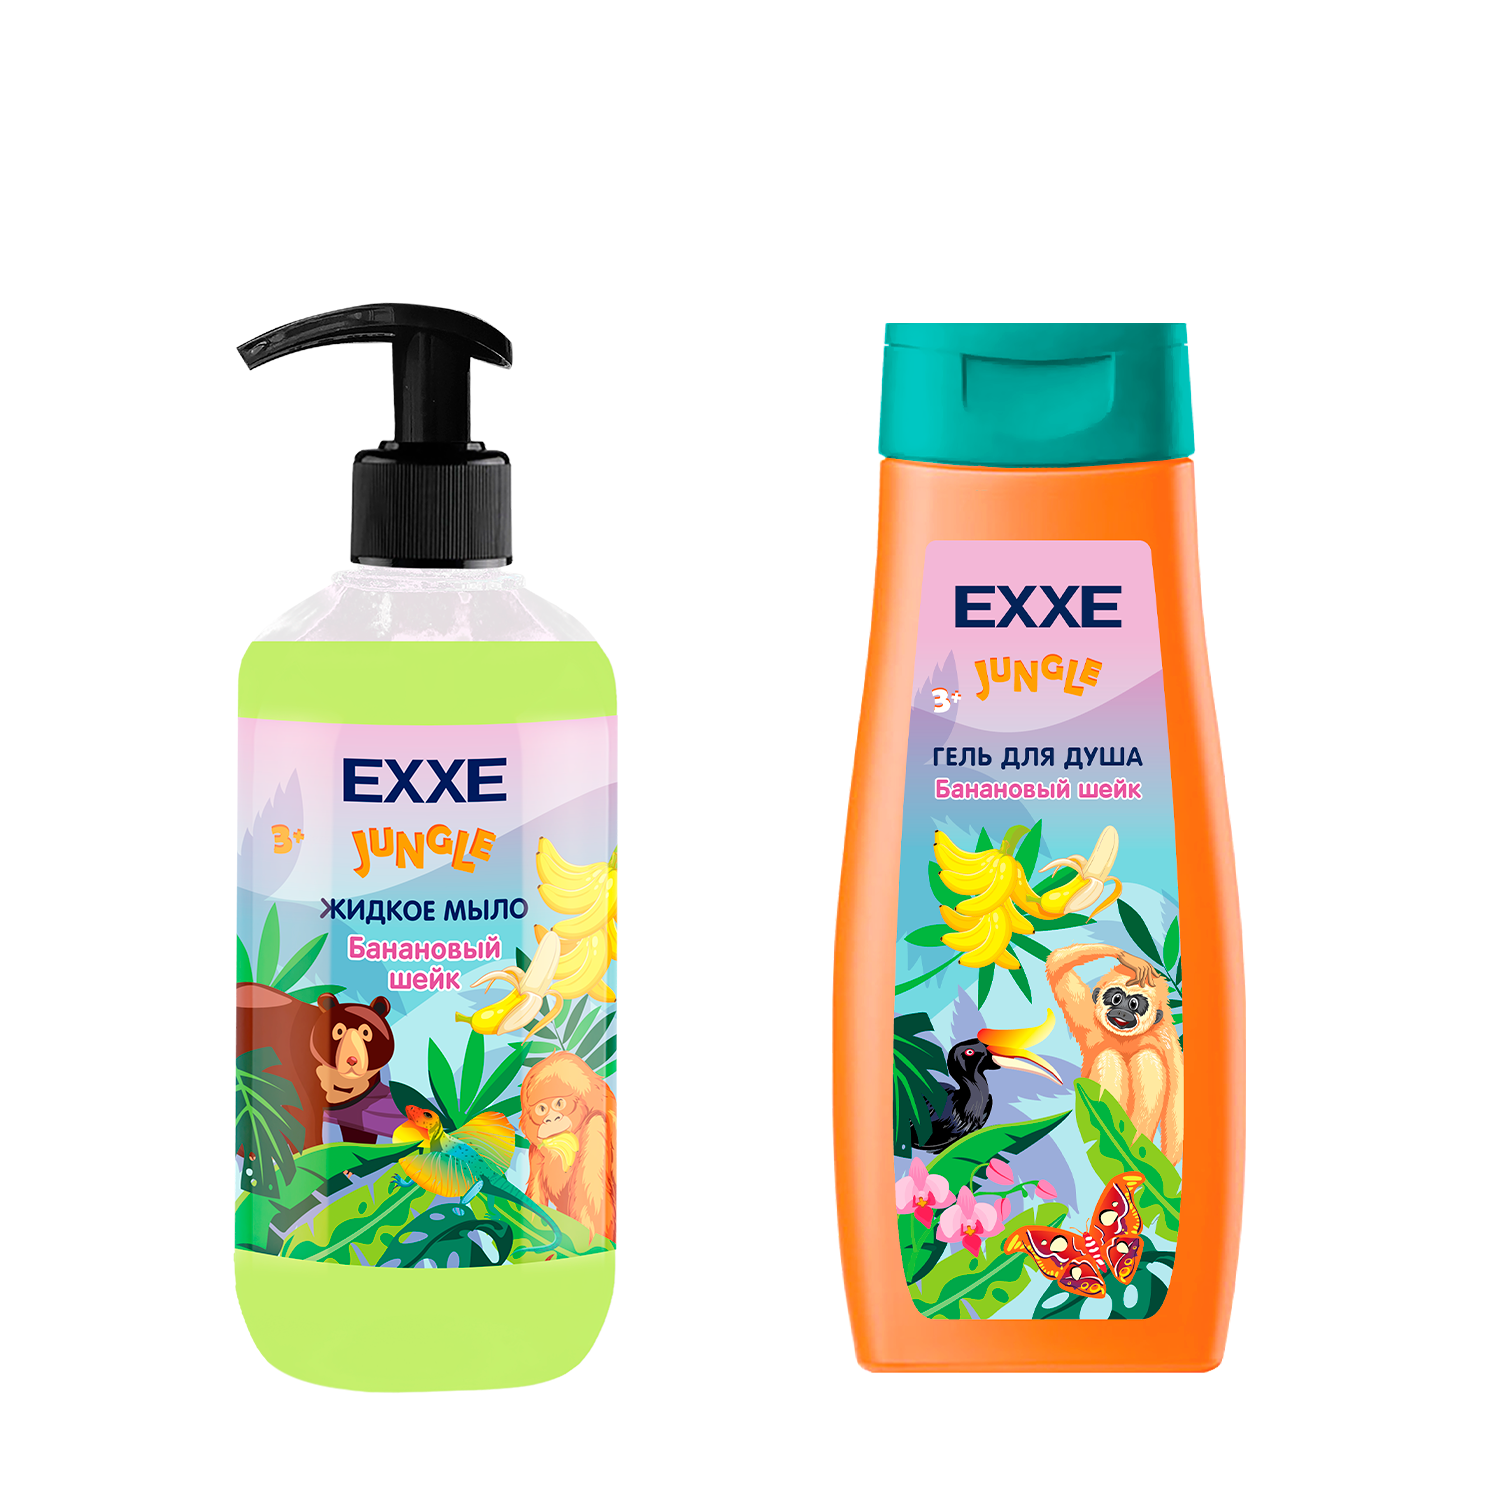 Набор детская серия EXXE Жидкое мыло + Гель для душа Банановый шейк - фото 1